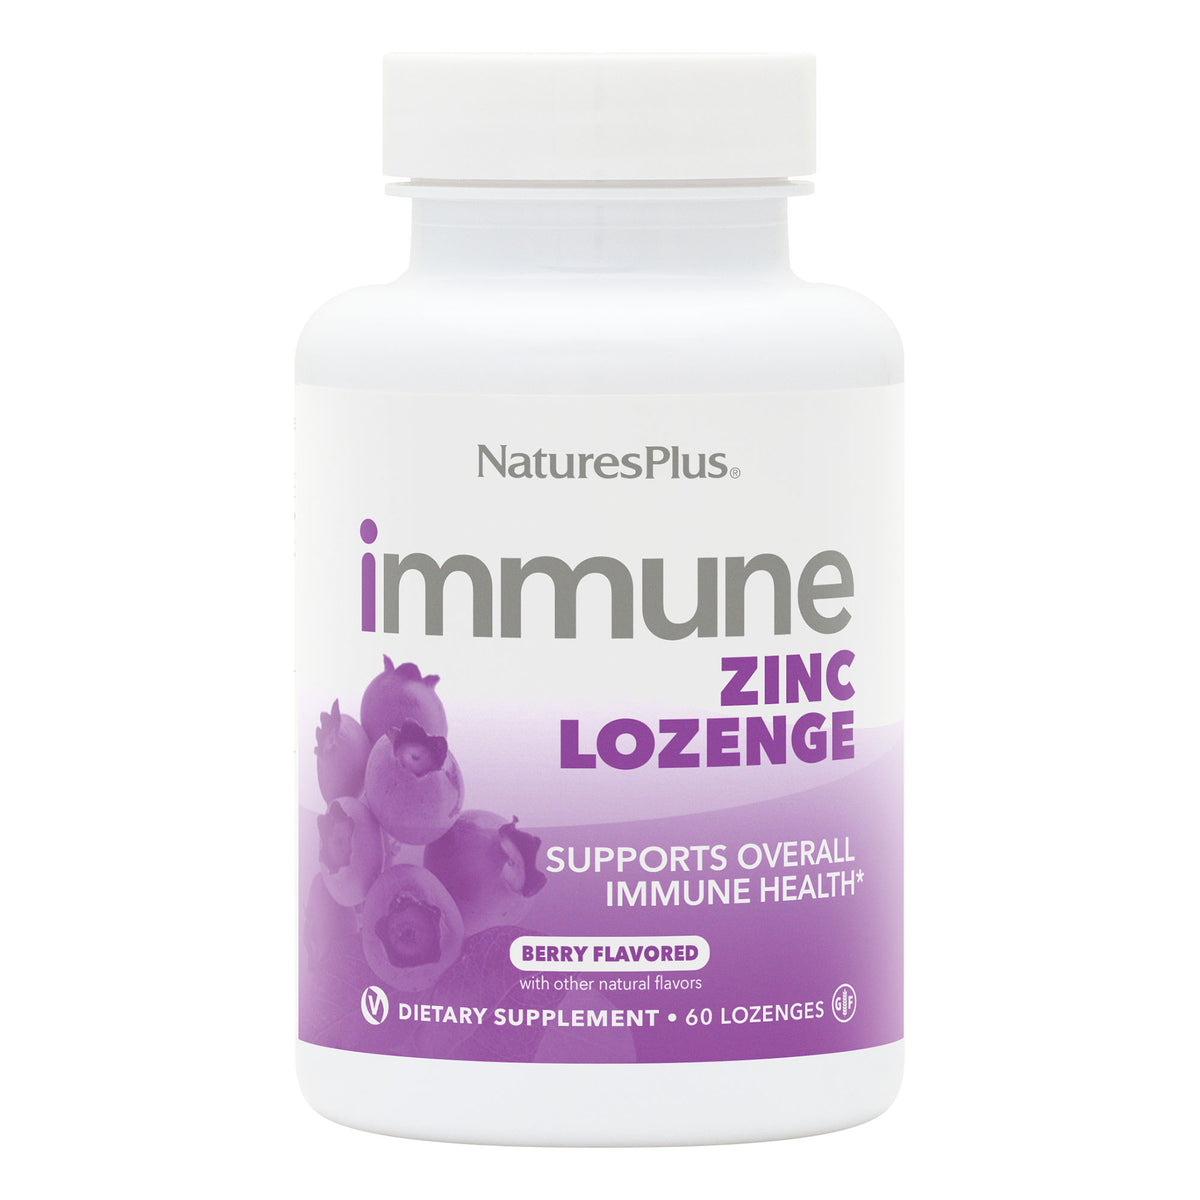 product image of Immune Zinc Lozenges containing Immune Zinc Lozenges